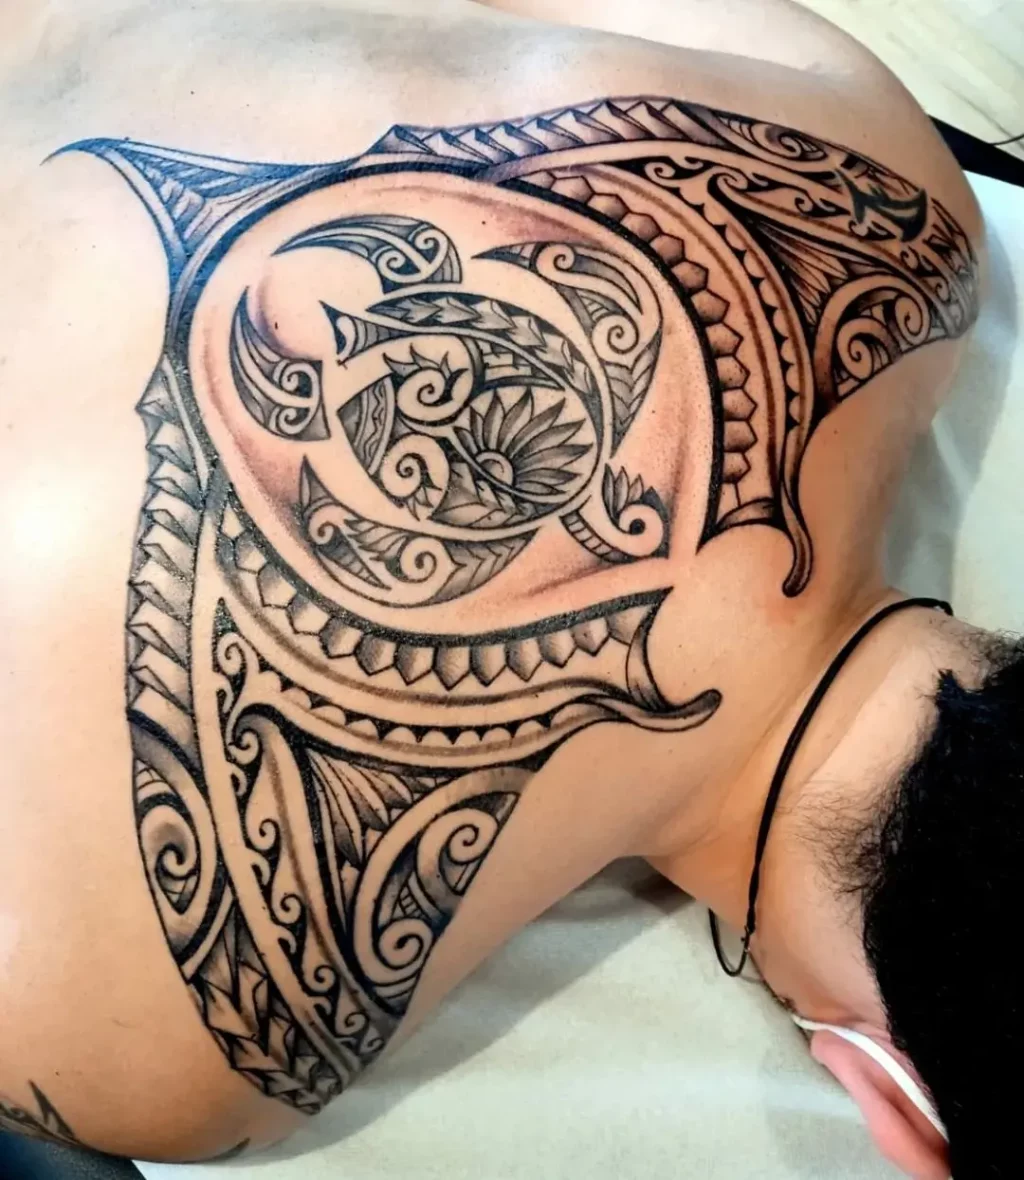 Manta Ray Samoan Tattoo